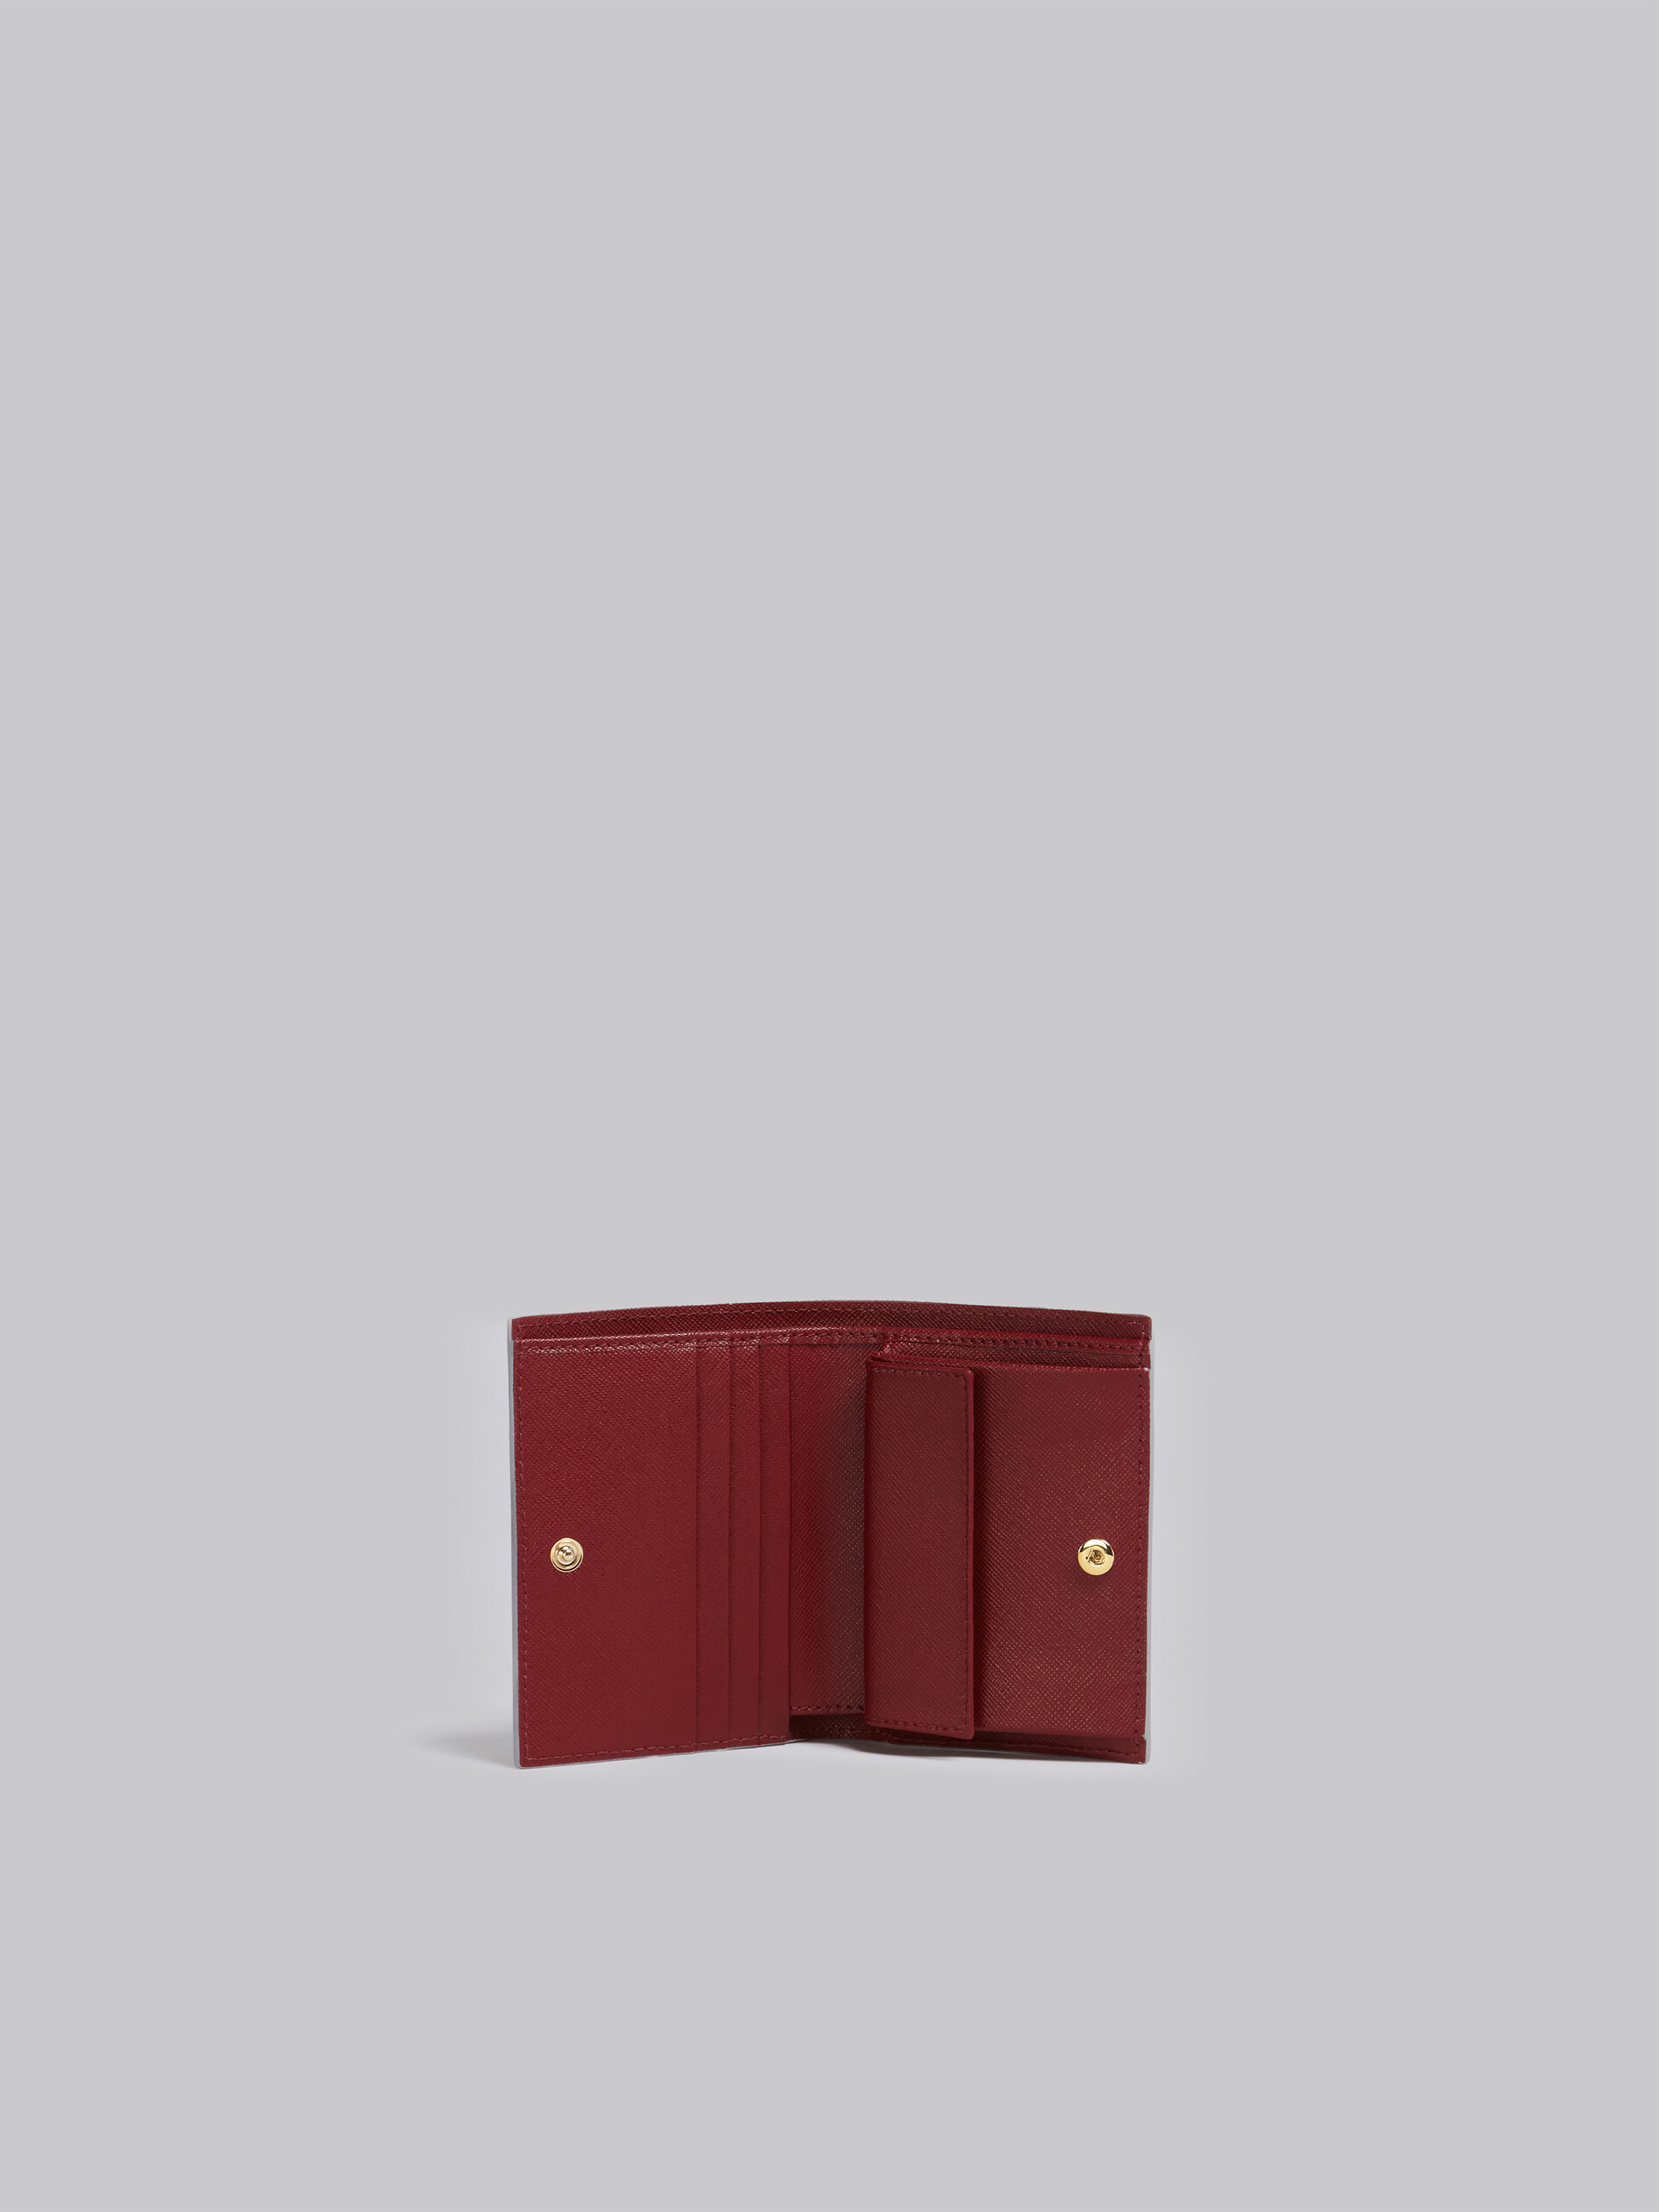 Portafoglio bi-fold in saffiano bianco rosa e rosso - Portafogli - Image 2